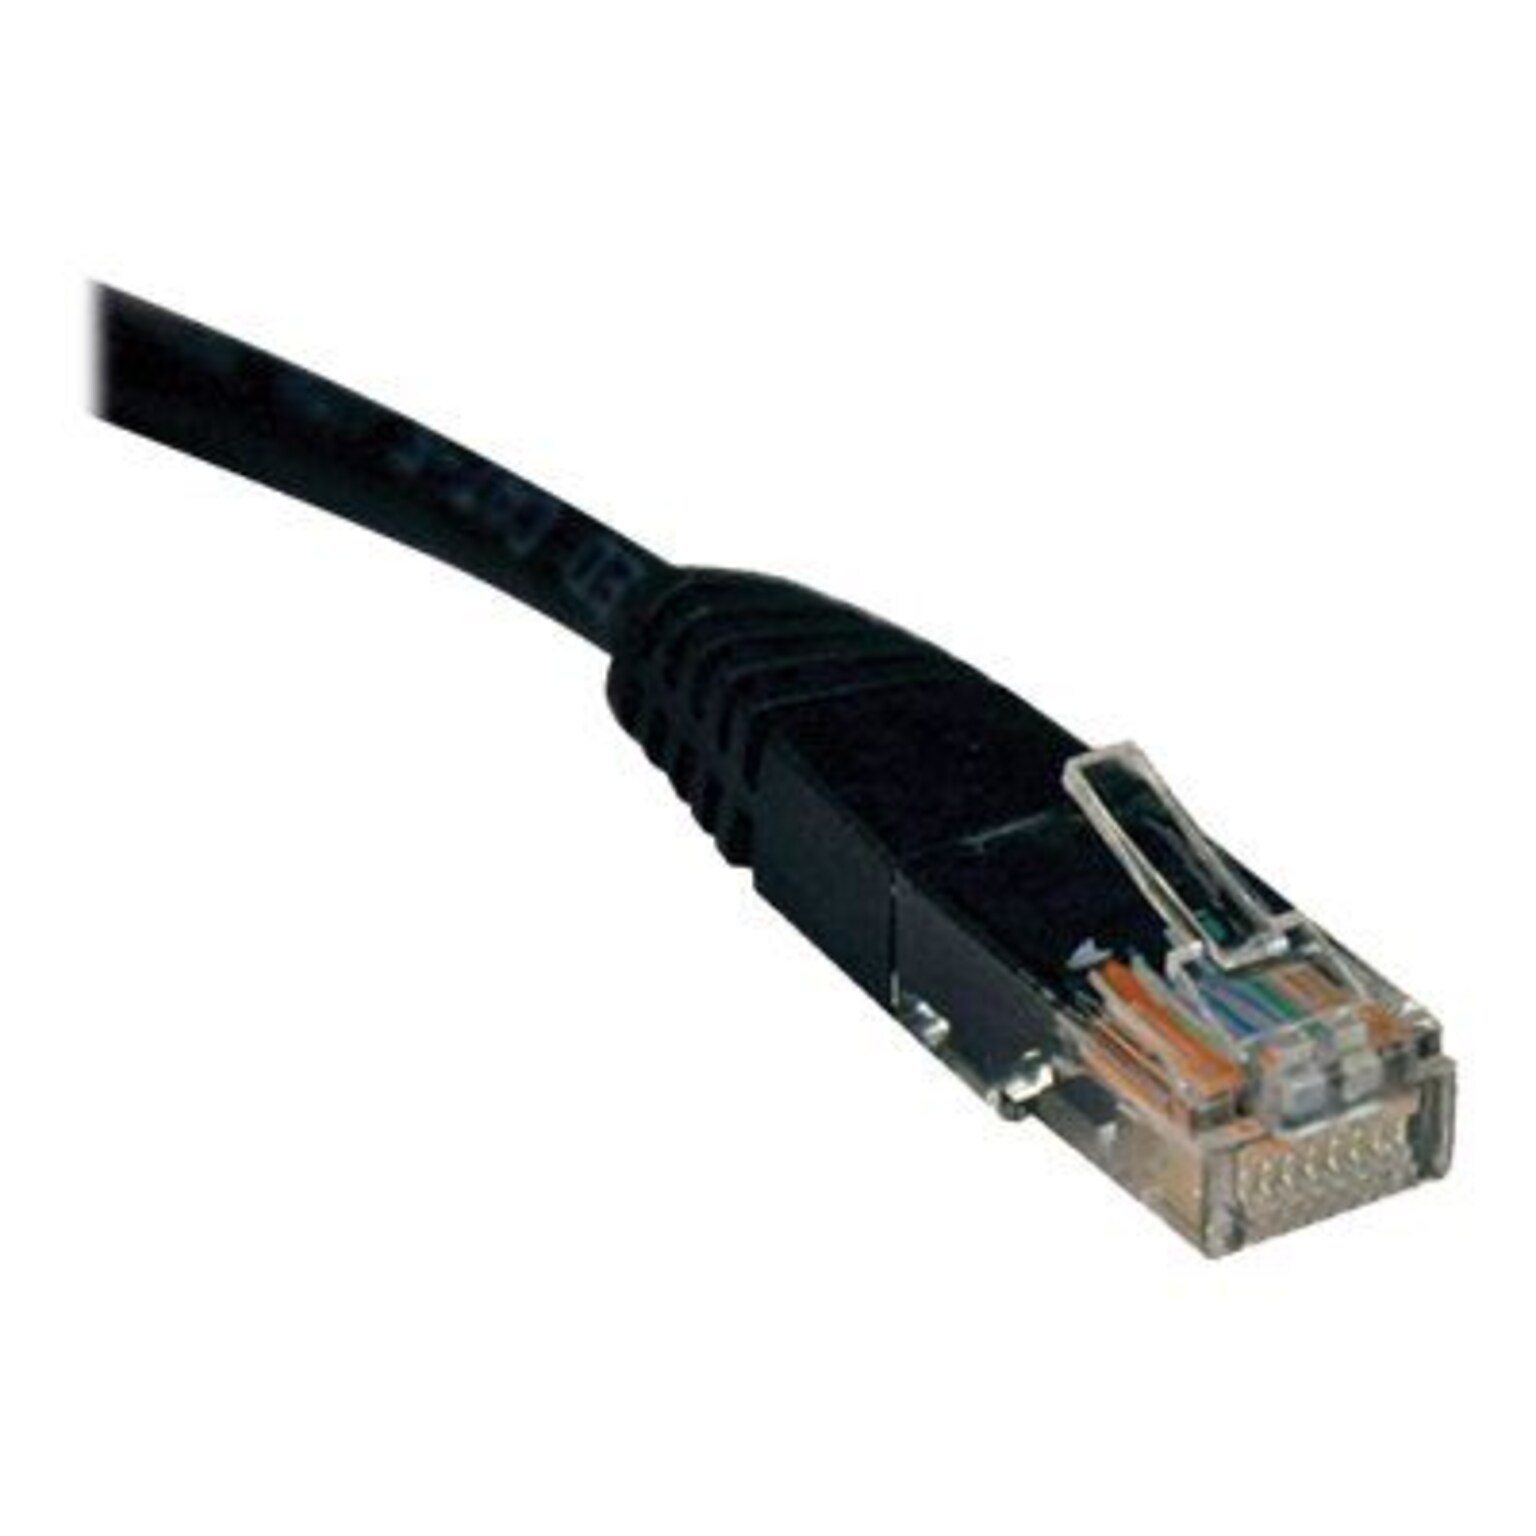 Tripp Lite N002-015-BK 15 CAT-5e Molded Patch Cable, Black7